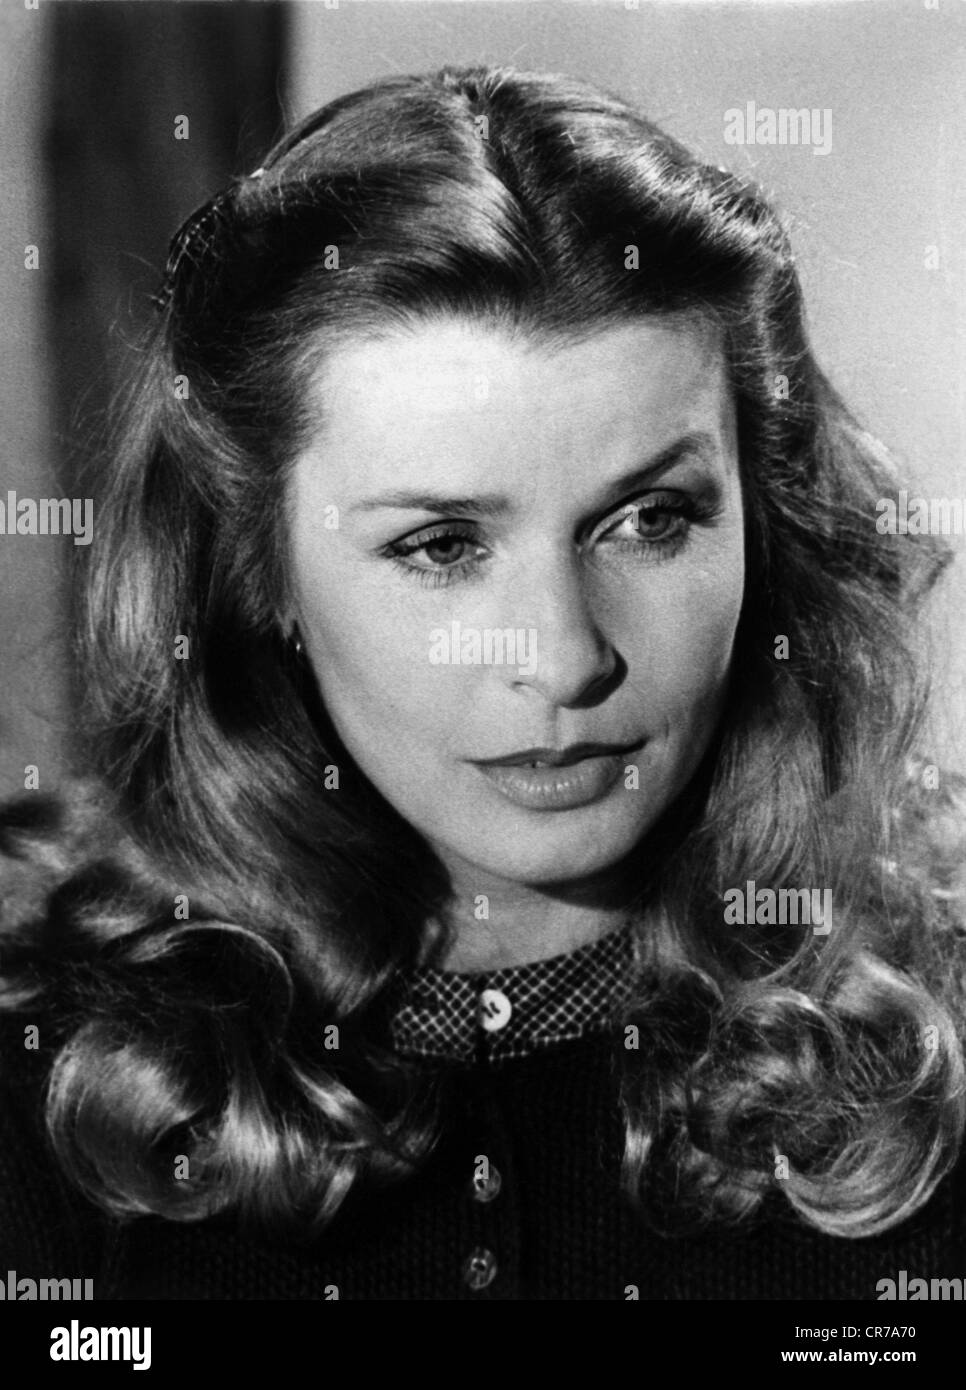 Berger, Senta, * 13.5.1941, actriz austriaca, retrato, 1981, , Foto de stock